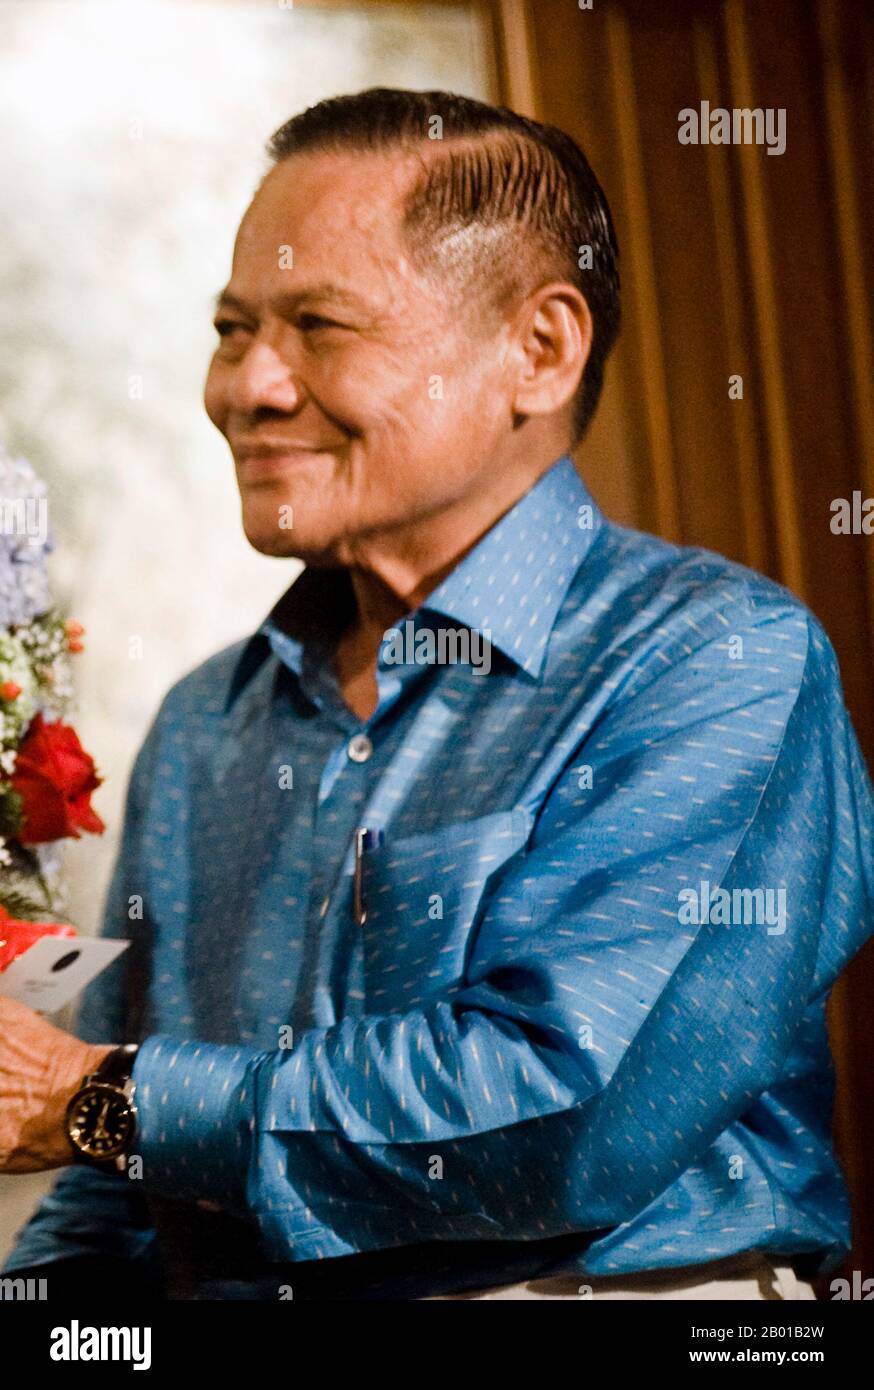 Thaïlande: Banharn Silpa-archa (19 août 1932 - 23 avril 2016), Premier Ministre de la Thaïlande (r. 1995-1996). Photo de Peerapat Wimonrangcart/Govt. De Thaïlande, 2009. Banharn Silpa-archa a été Premier Ministre de Thaïlande en 21st, du 13 juillet 1995 au 24 novembre 1996. Depuis 1976, il a été député sino-thaïlandais depuis qu'il a été élu représentant de la province de Suphanburi. Il avait fait sa fortune dans la construction avant d’entrer en politique et a occupé différents postes au sein de plusieurs gouvernements. Il a été impliqué dans divers scandales de corruption au cours de son mandat, ce qui l'a amené à démissionner. Banque D'Images